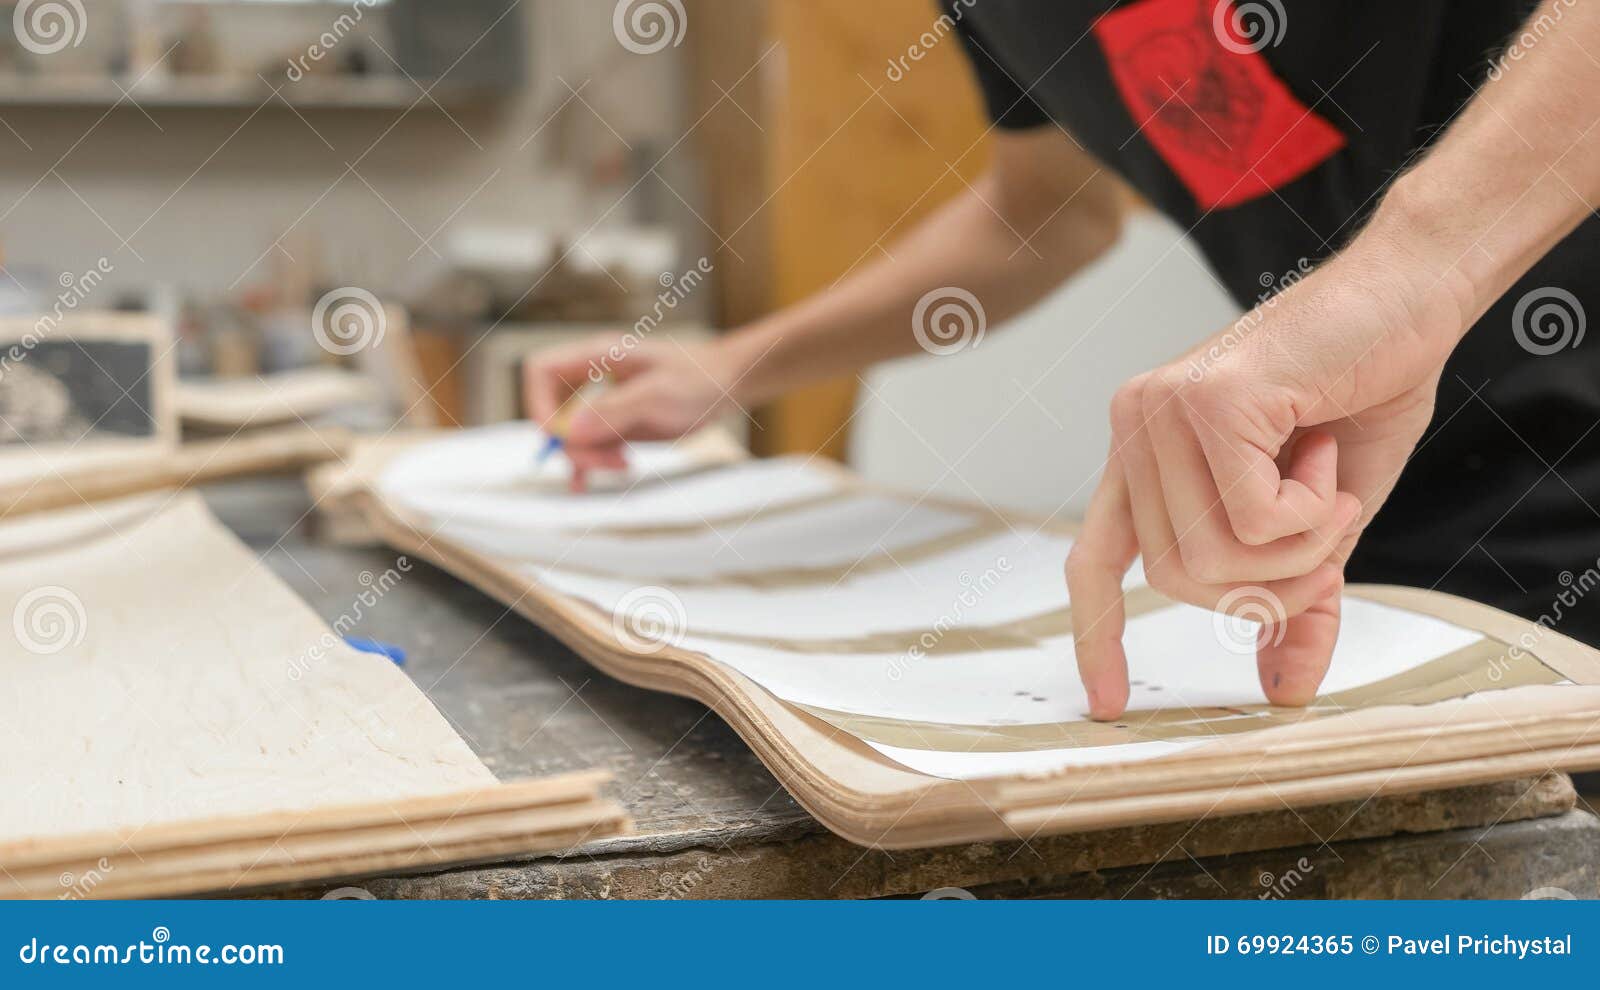 Kinematik Modstander kaste støv i øjnene Making of Longboard Deck stock image. Image of profession - 69924365